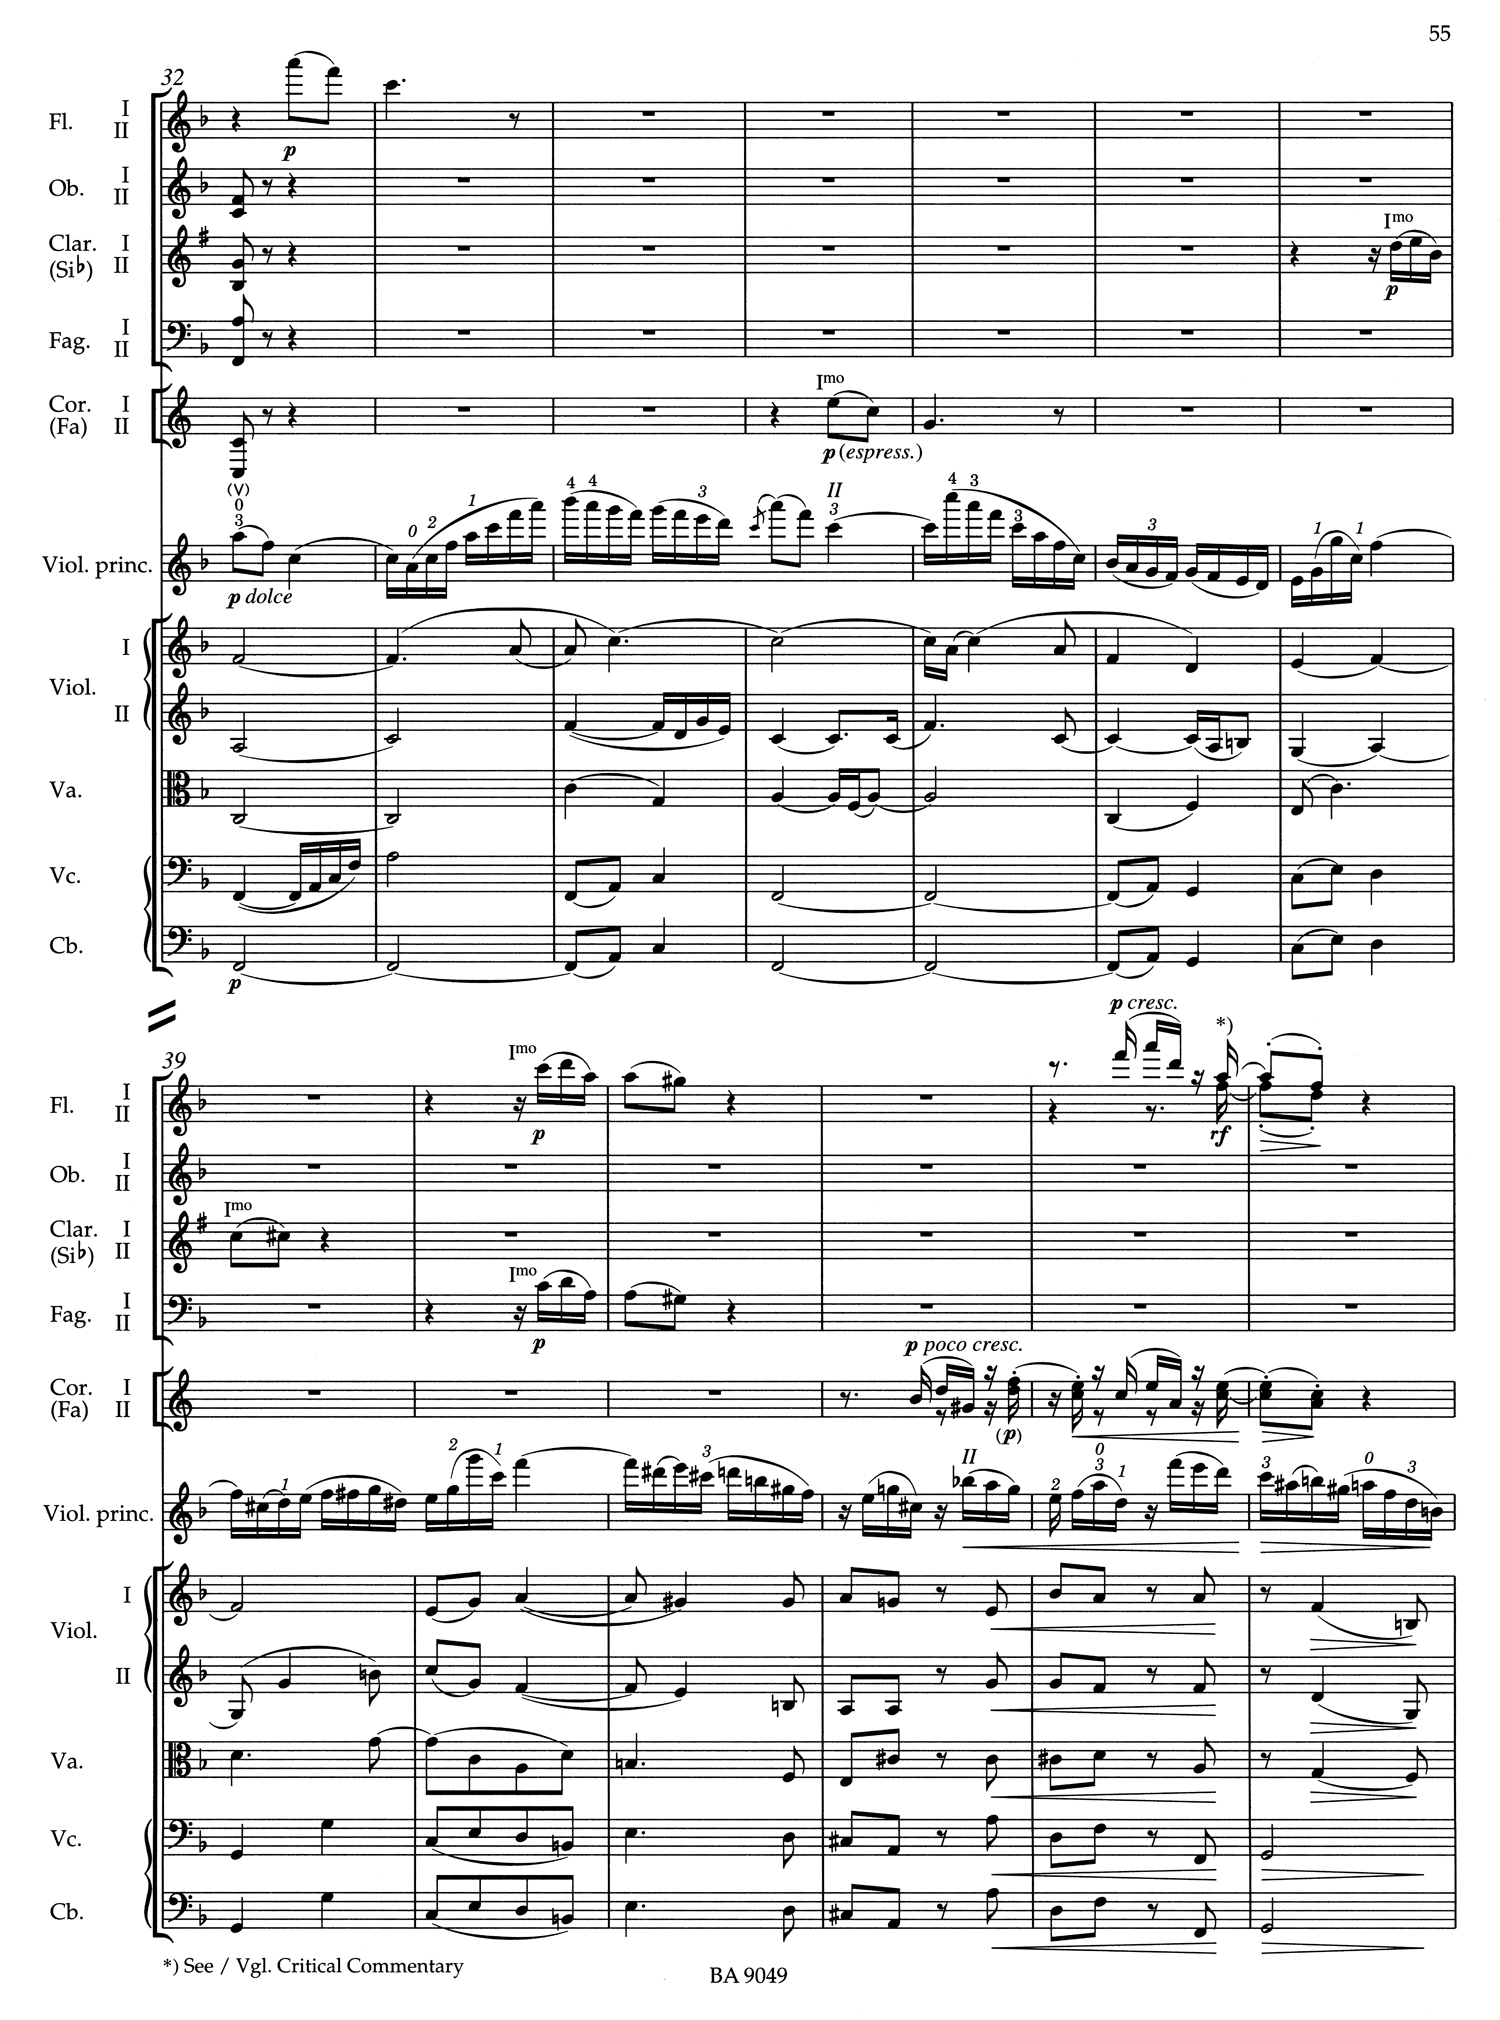 Brahms Violin Score 3.jpg